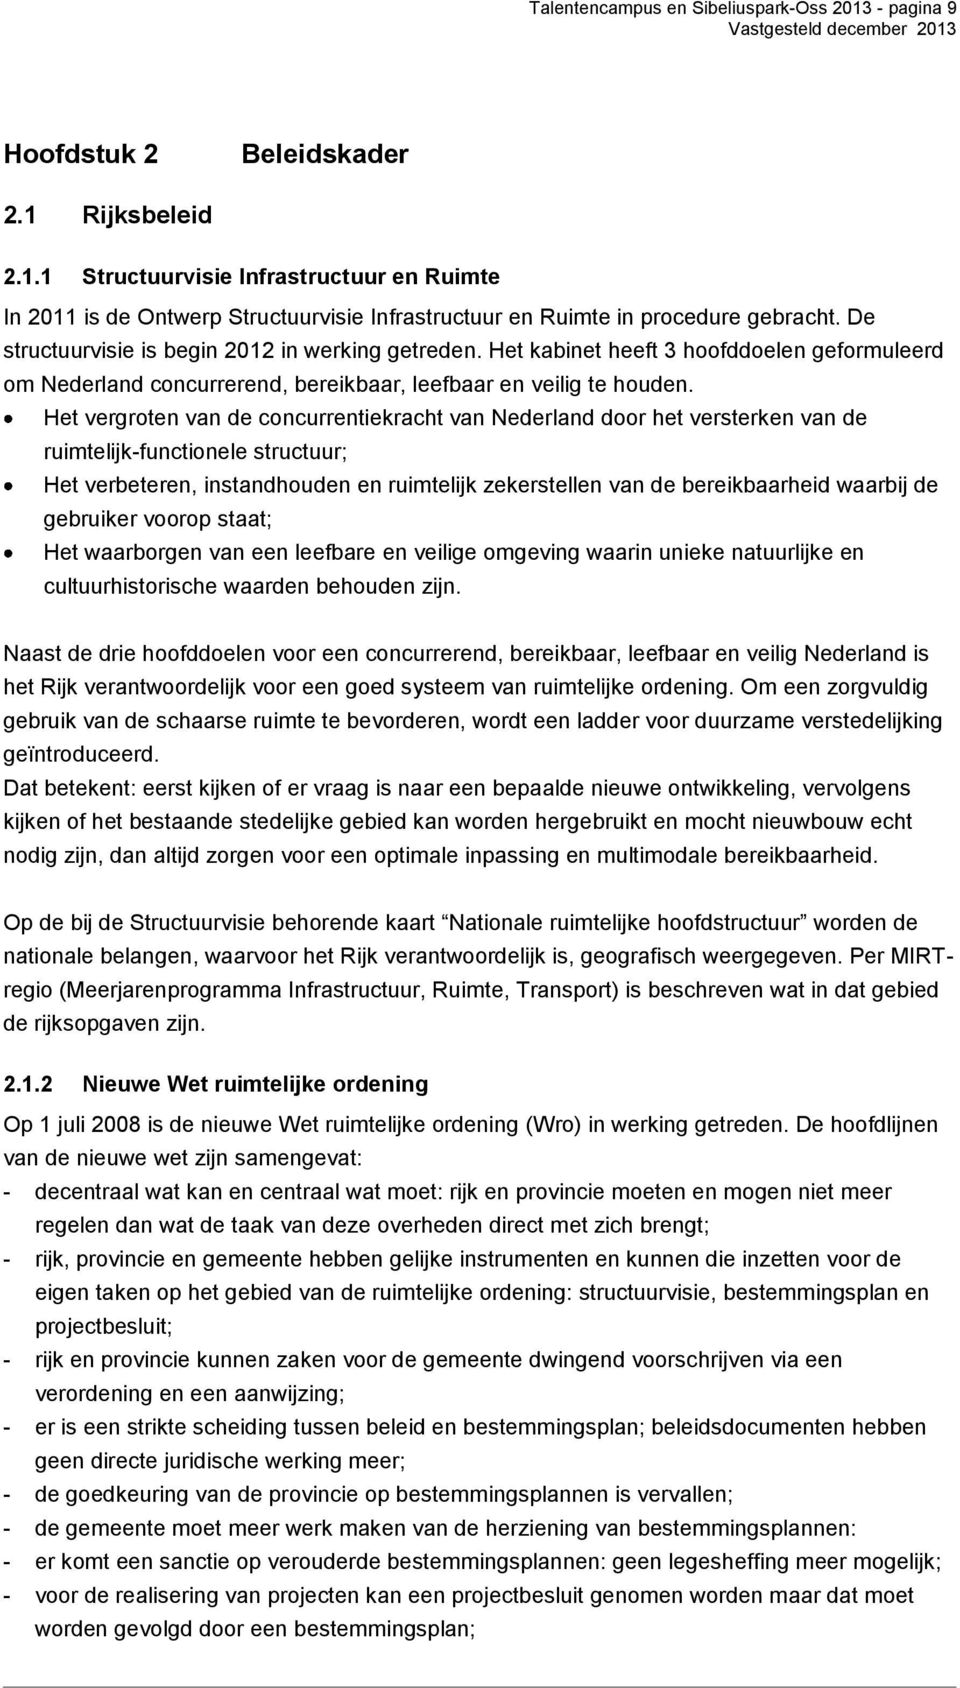 Het vergroten van de concurrentiekracht van Nederland door het versterken van de ruimtelijk-functionele structuur; Het verbeteren, instandhouden en ruimtelijk zekerstellen van de bereikbaarheid